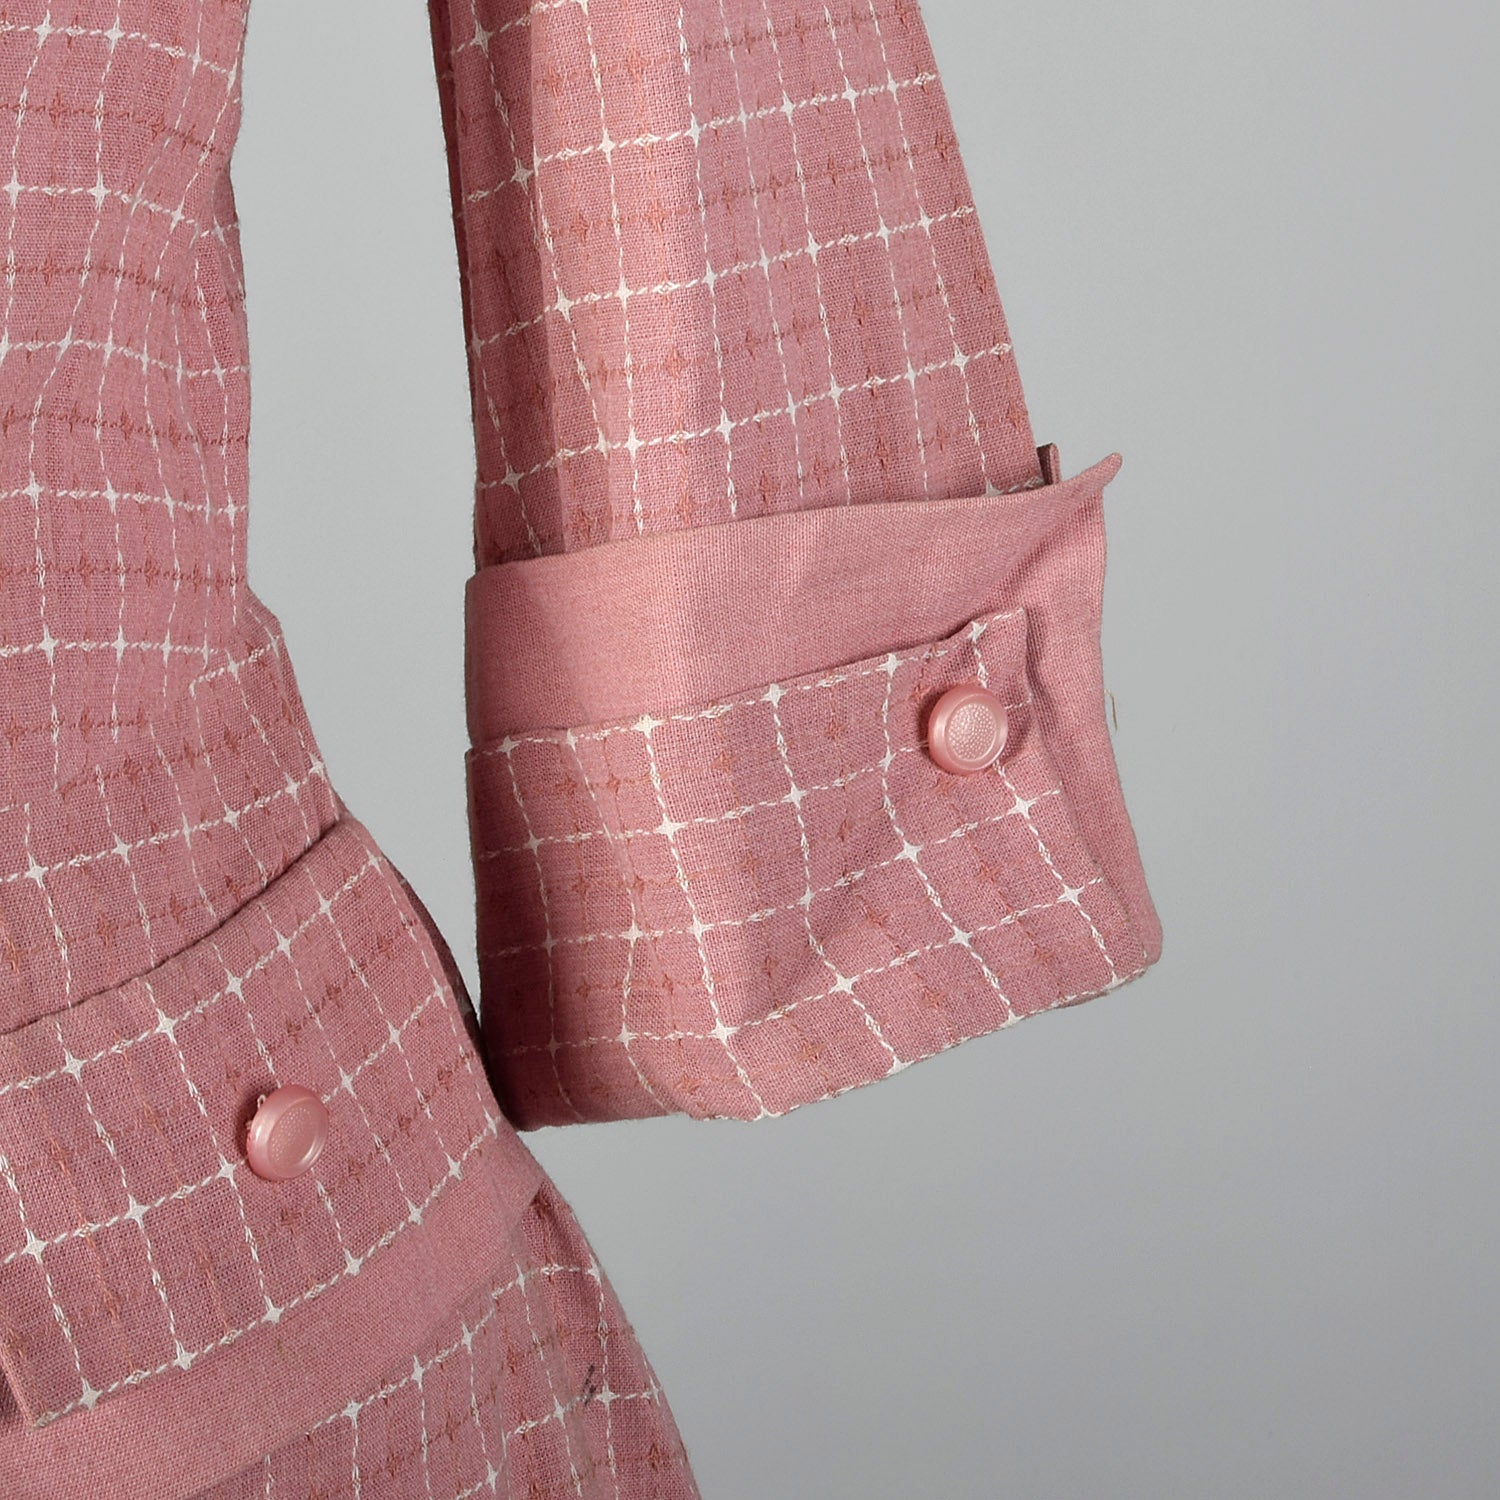 1950s Lightweight Pink Summer Skirt Suit